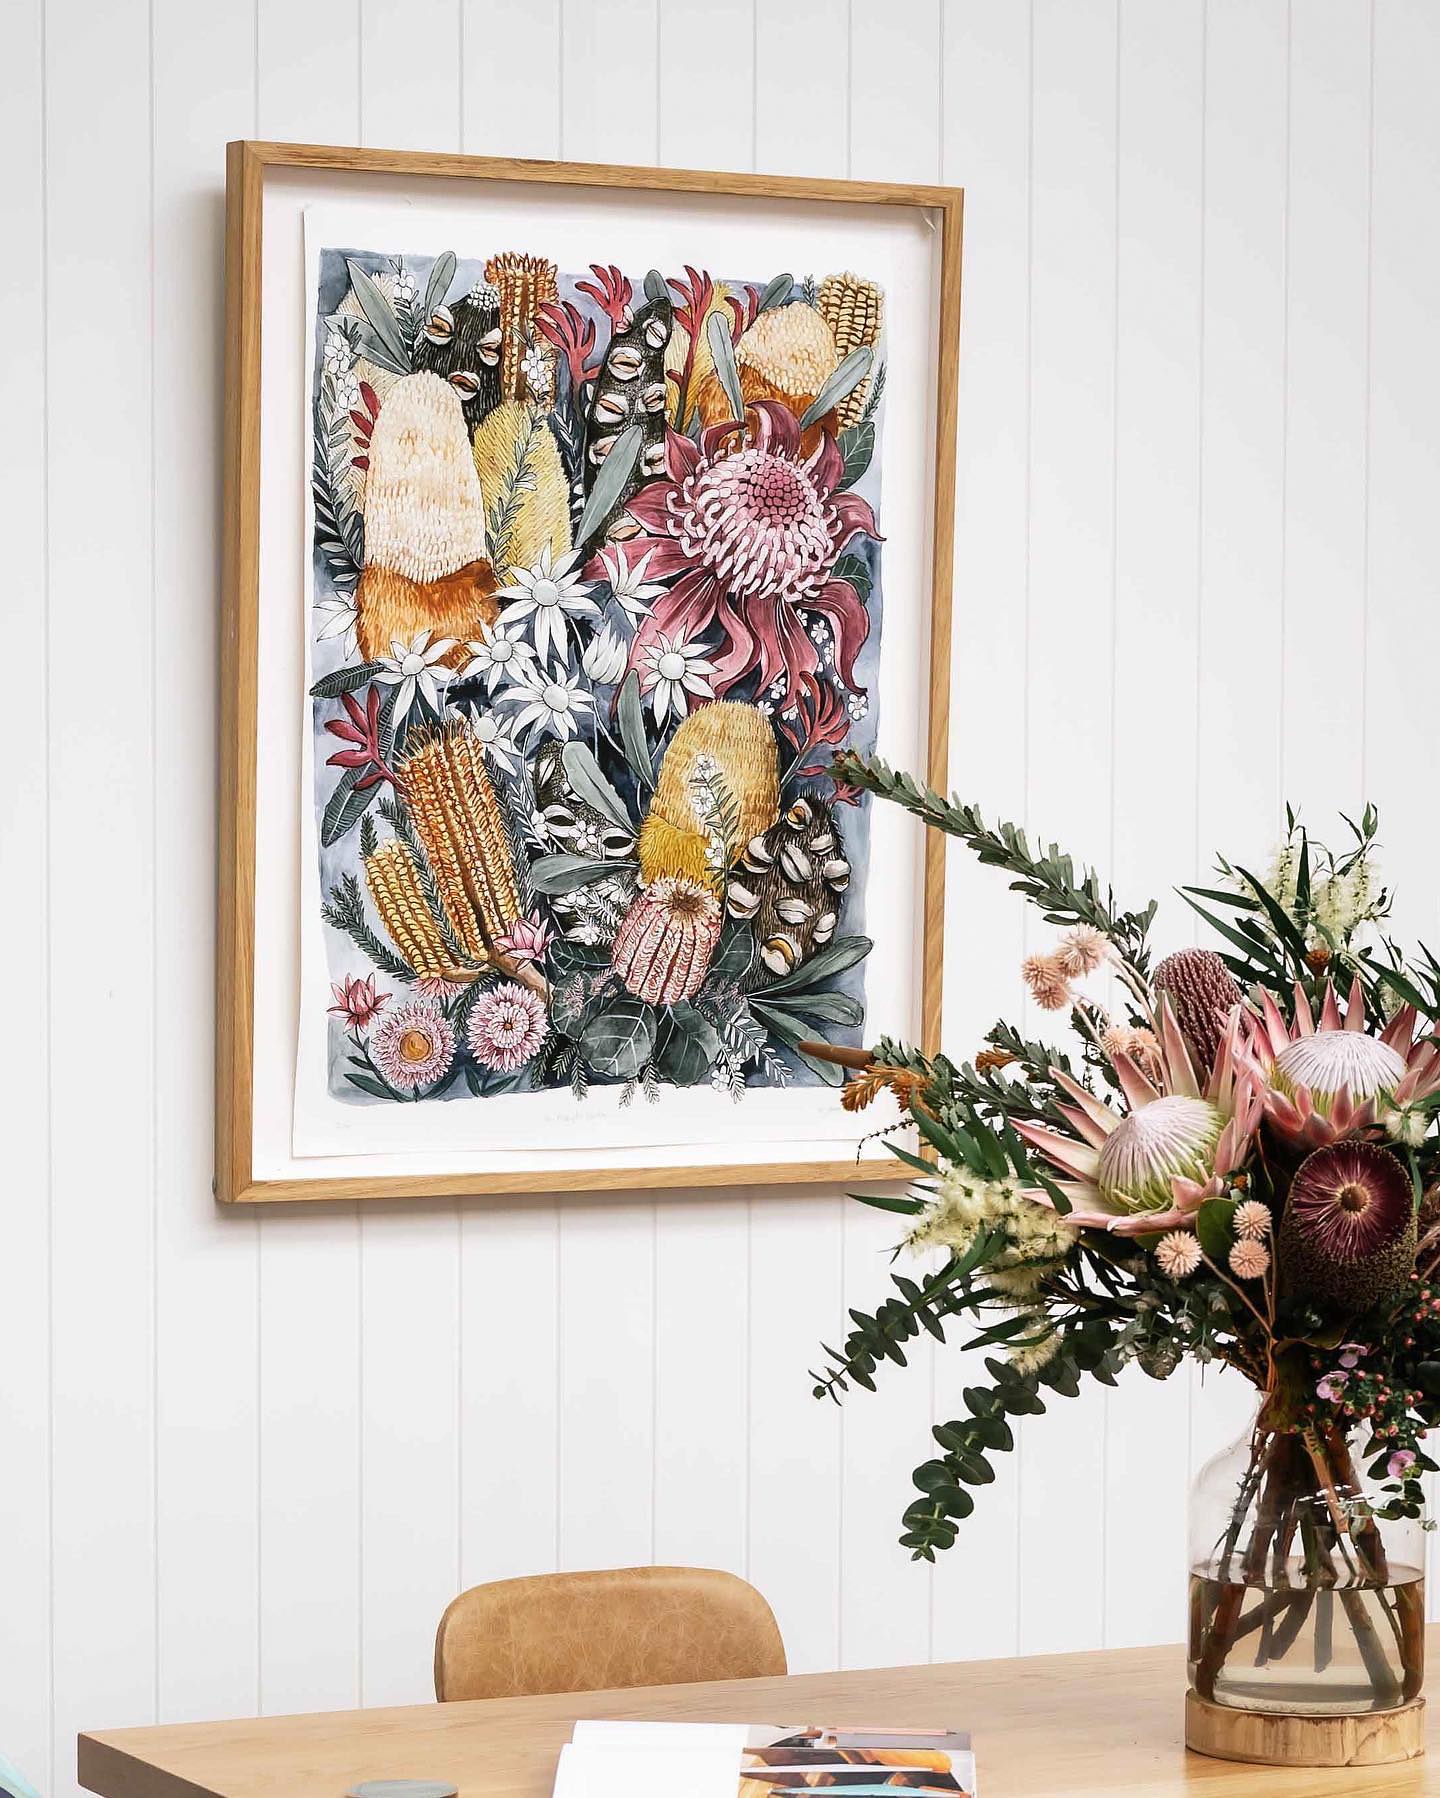 Wildflower-inspired floral art - Emma Morgan on Thursd